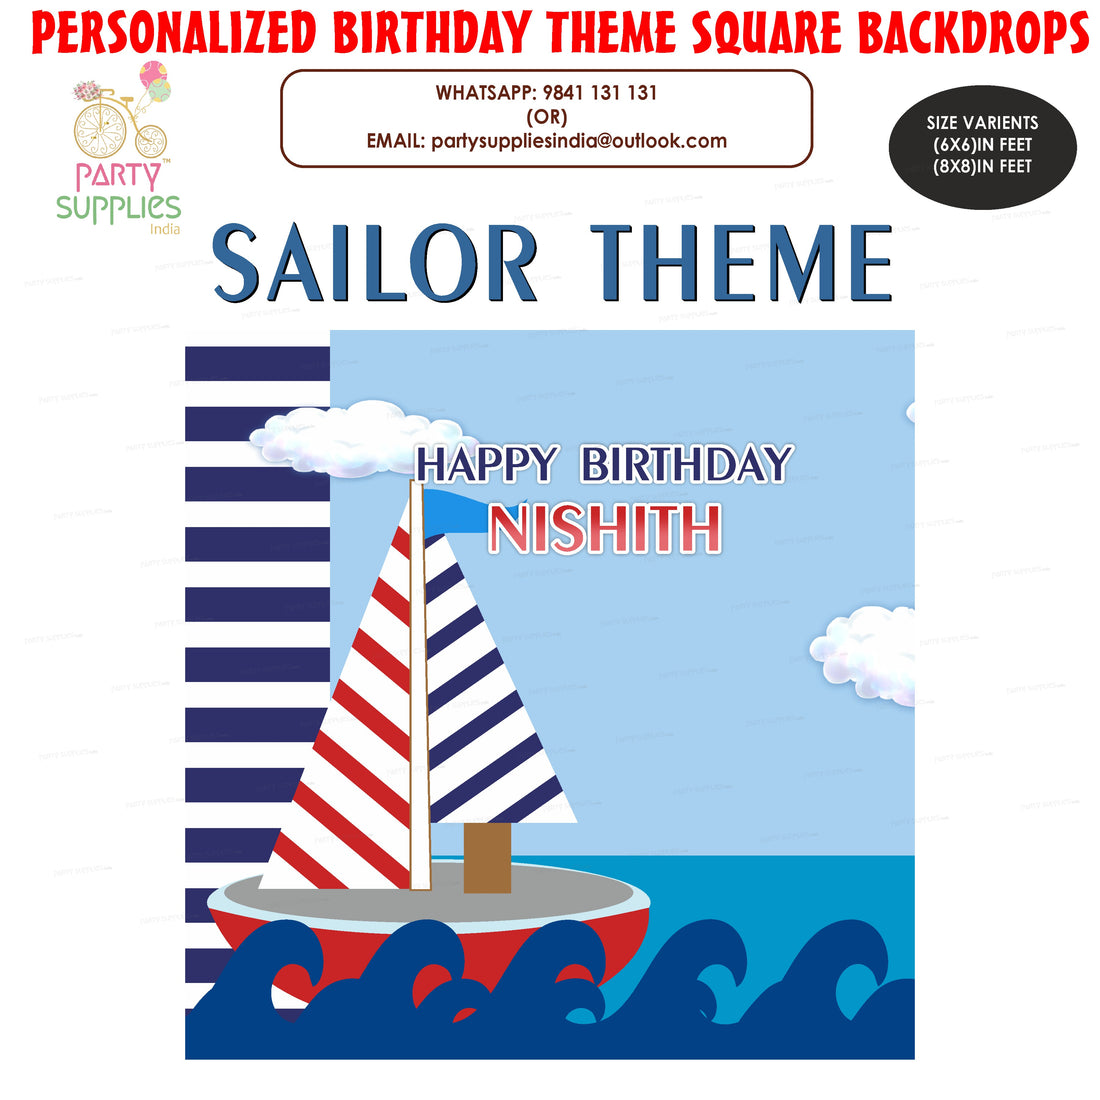 PSI Sailor Theme Customized Square Backdrop